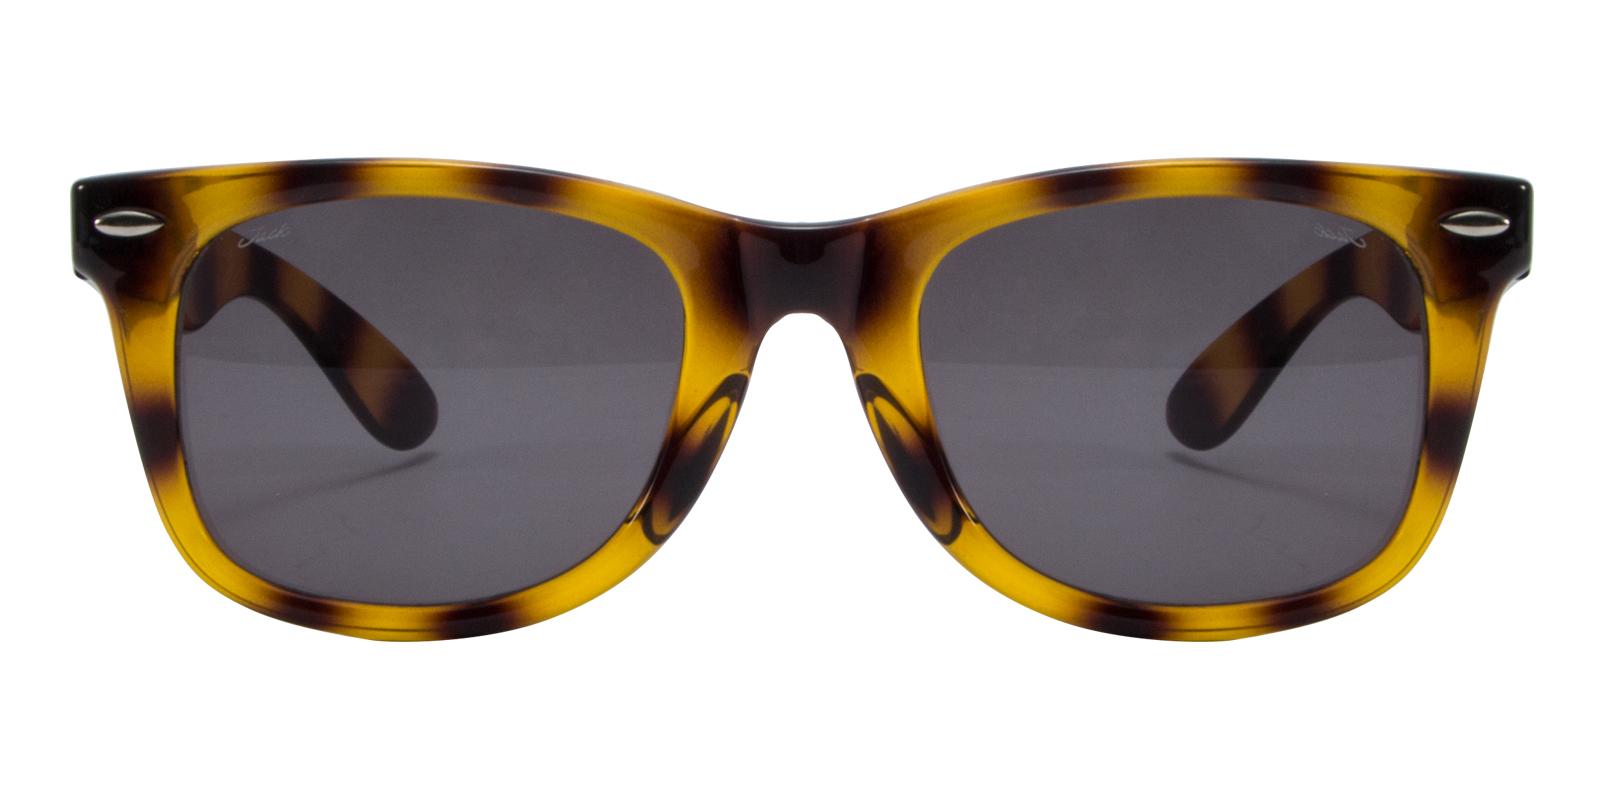 Hurra Tortoise TR Sunglasses , UniversalBridgeFit Frames from ABBE Glasses